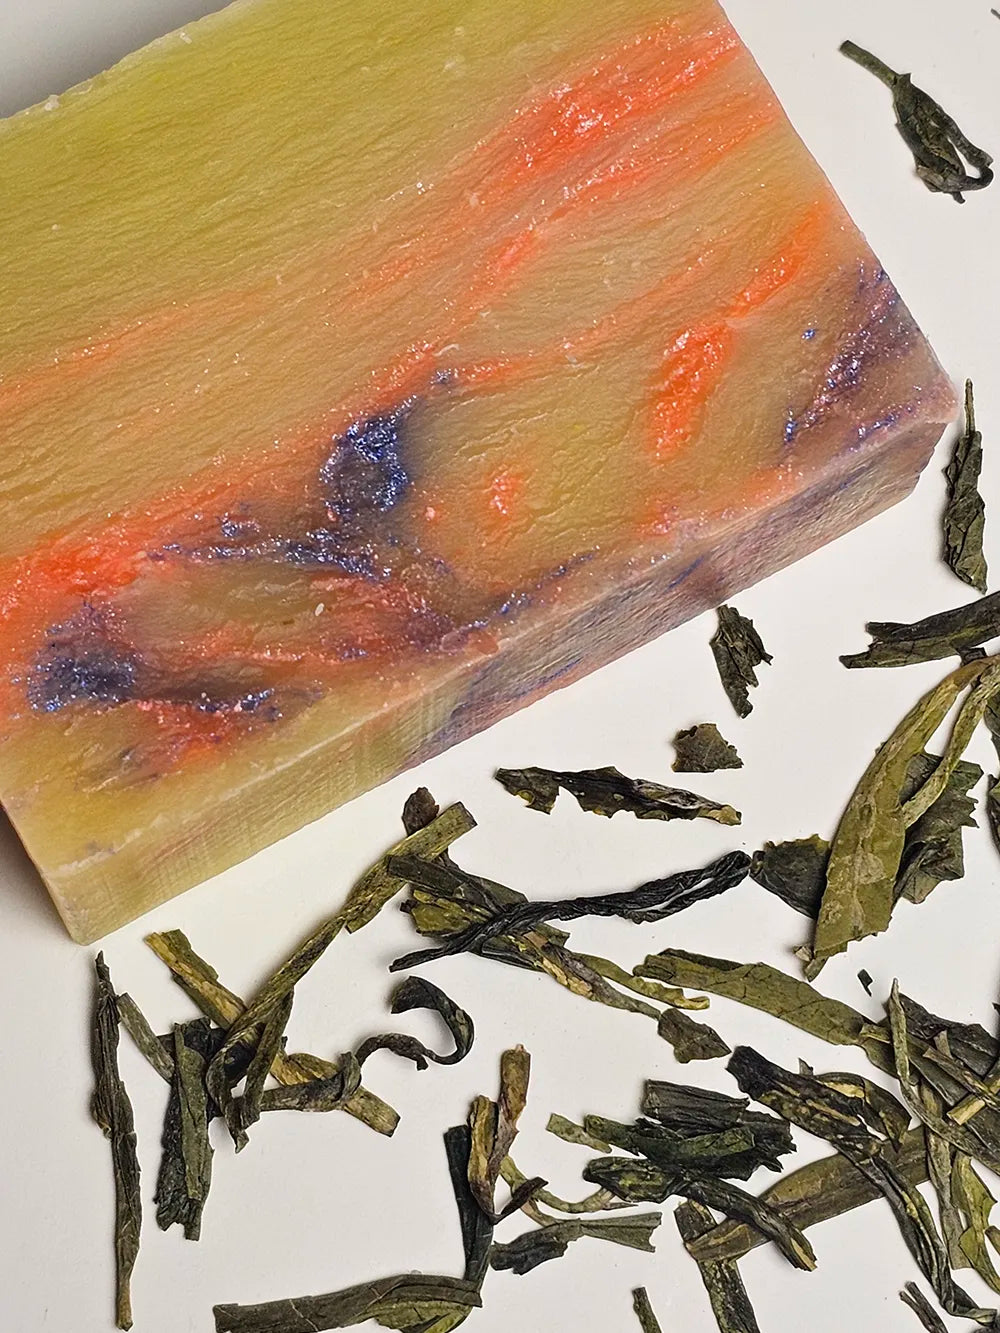 Green Tea and Lemon Soap - 1 bar